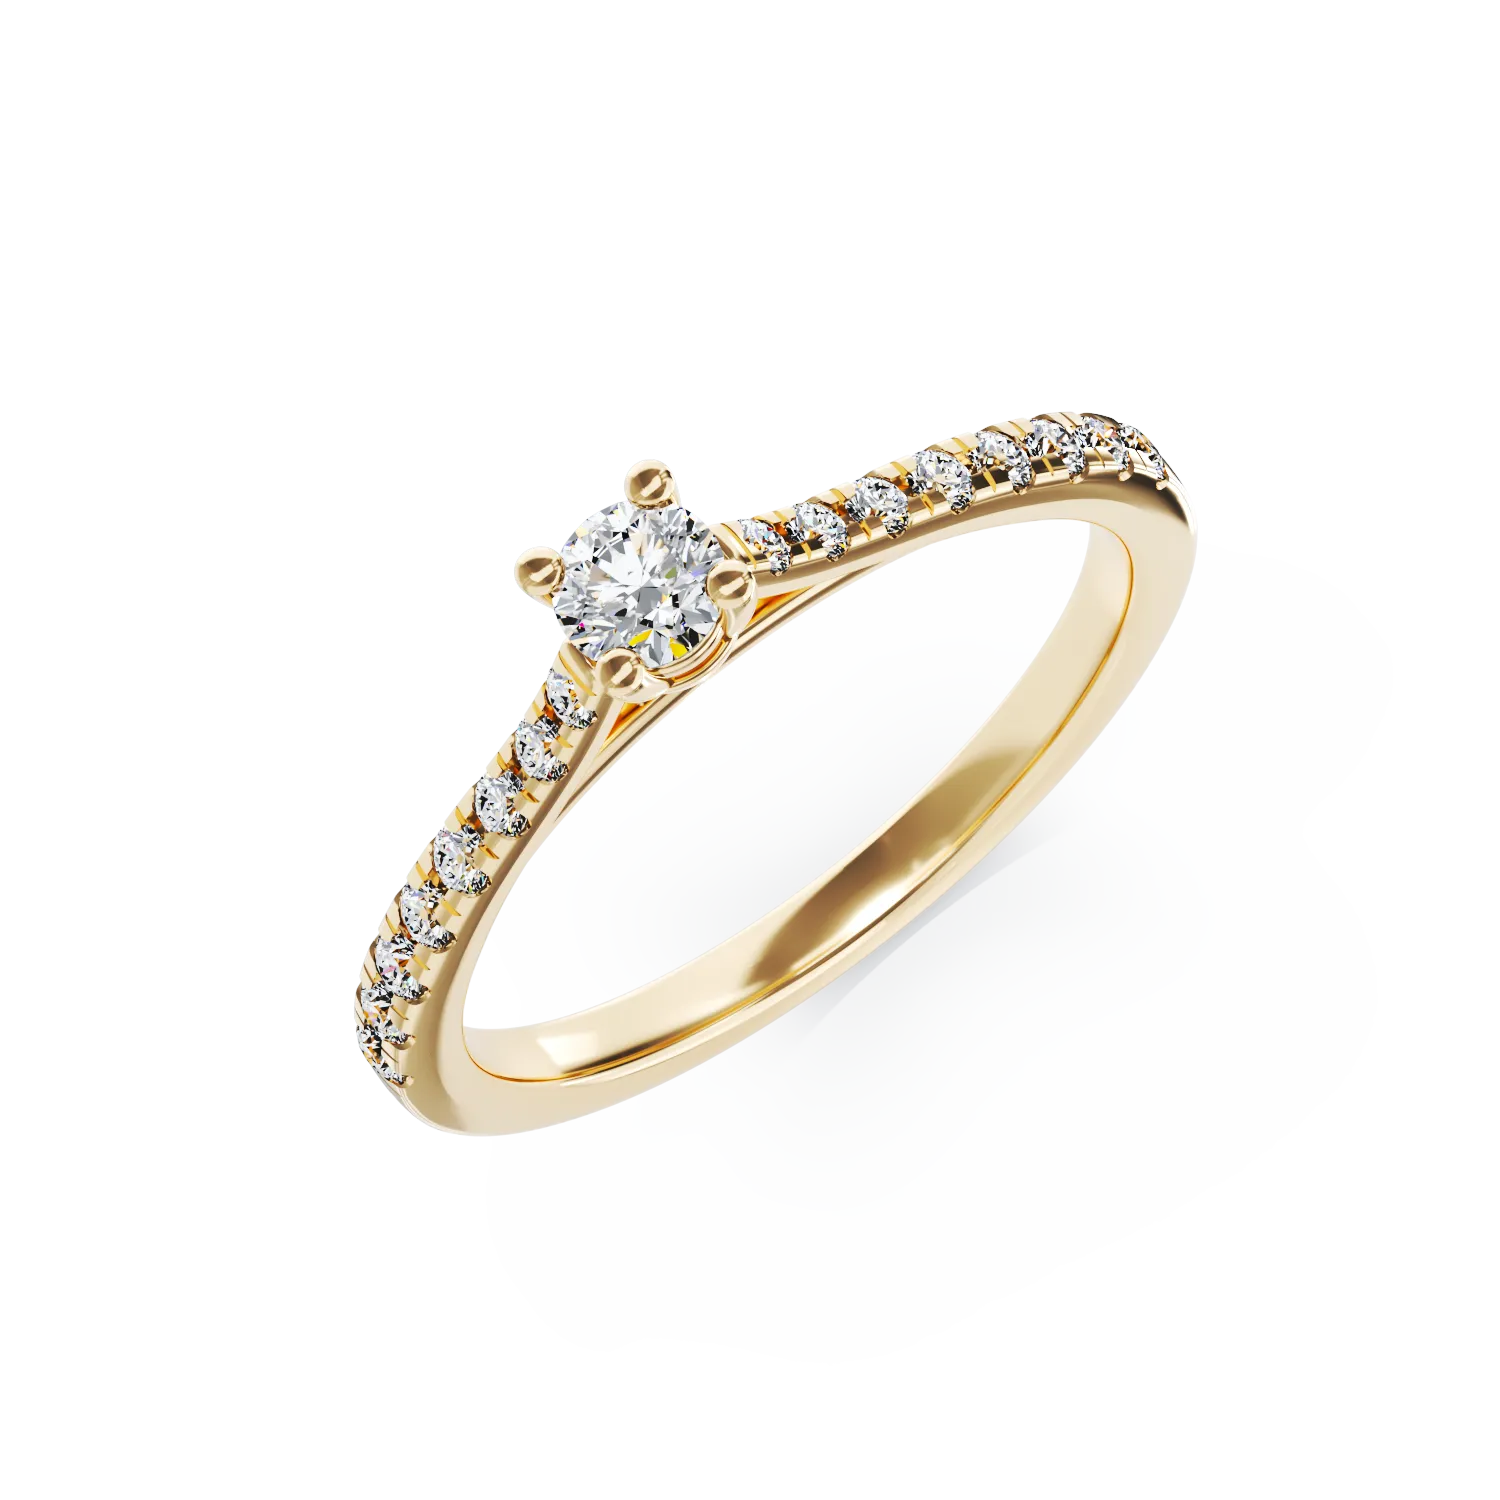 Eljegyzési gyűrű 18K-os sárga aranyból 0,16ct gyémánttal és 0,17ct gyémántokkal. Gramm: 2,27